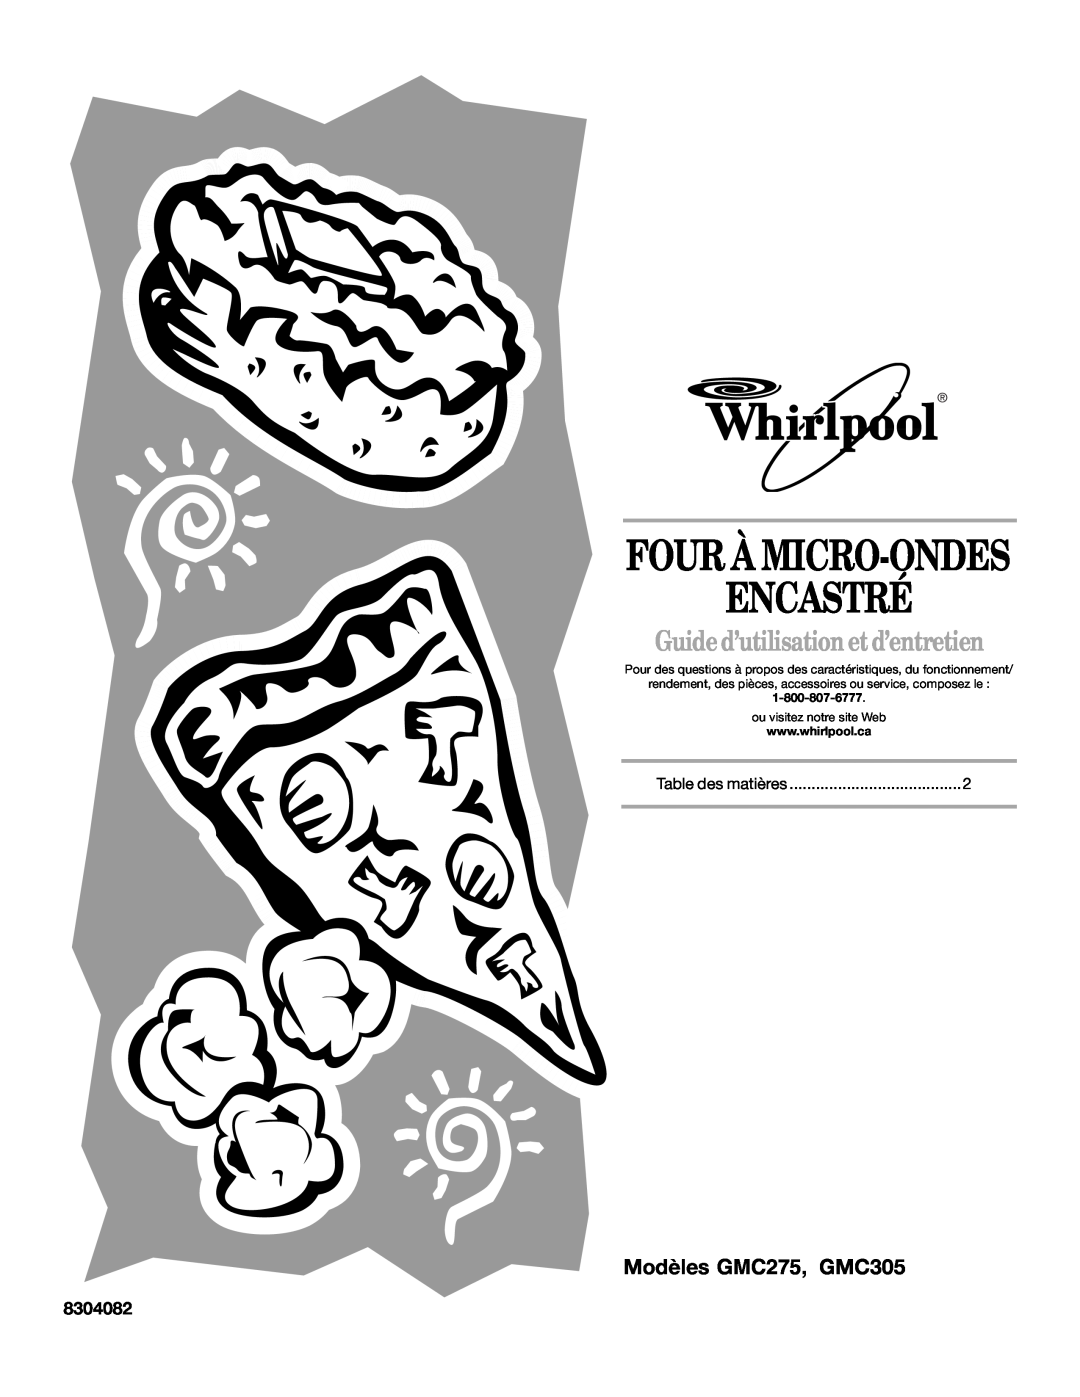 Whirlpool manual 8304082, Encastré, Four À Micro-Ondes, Guide d’utilisation etd’entretien, Modèles GMC275, GMC305 